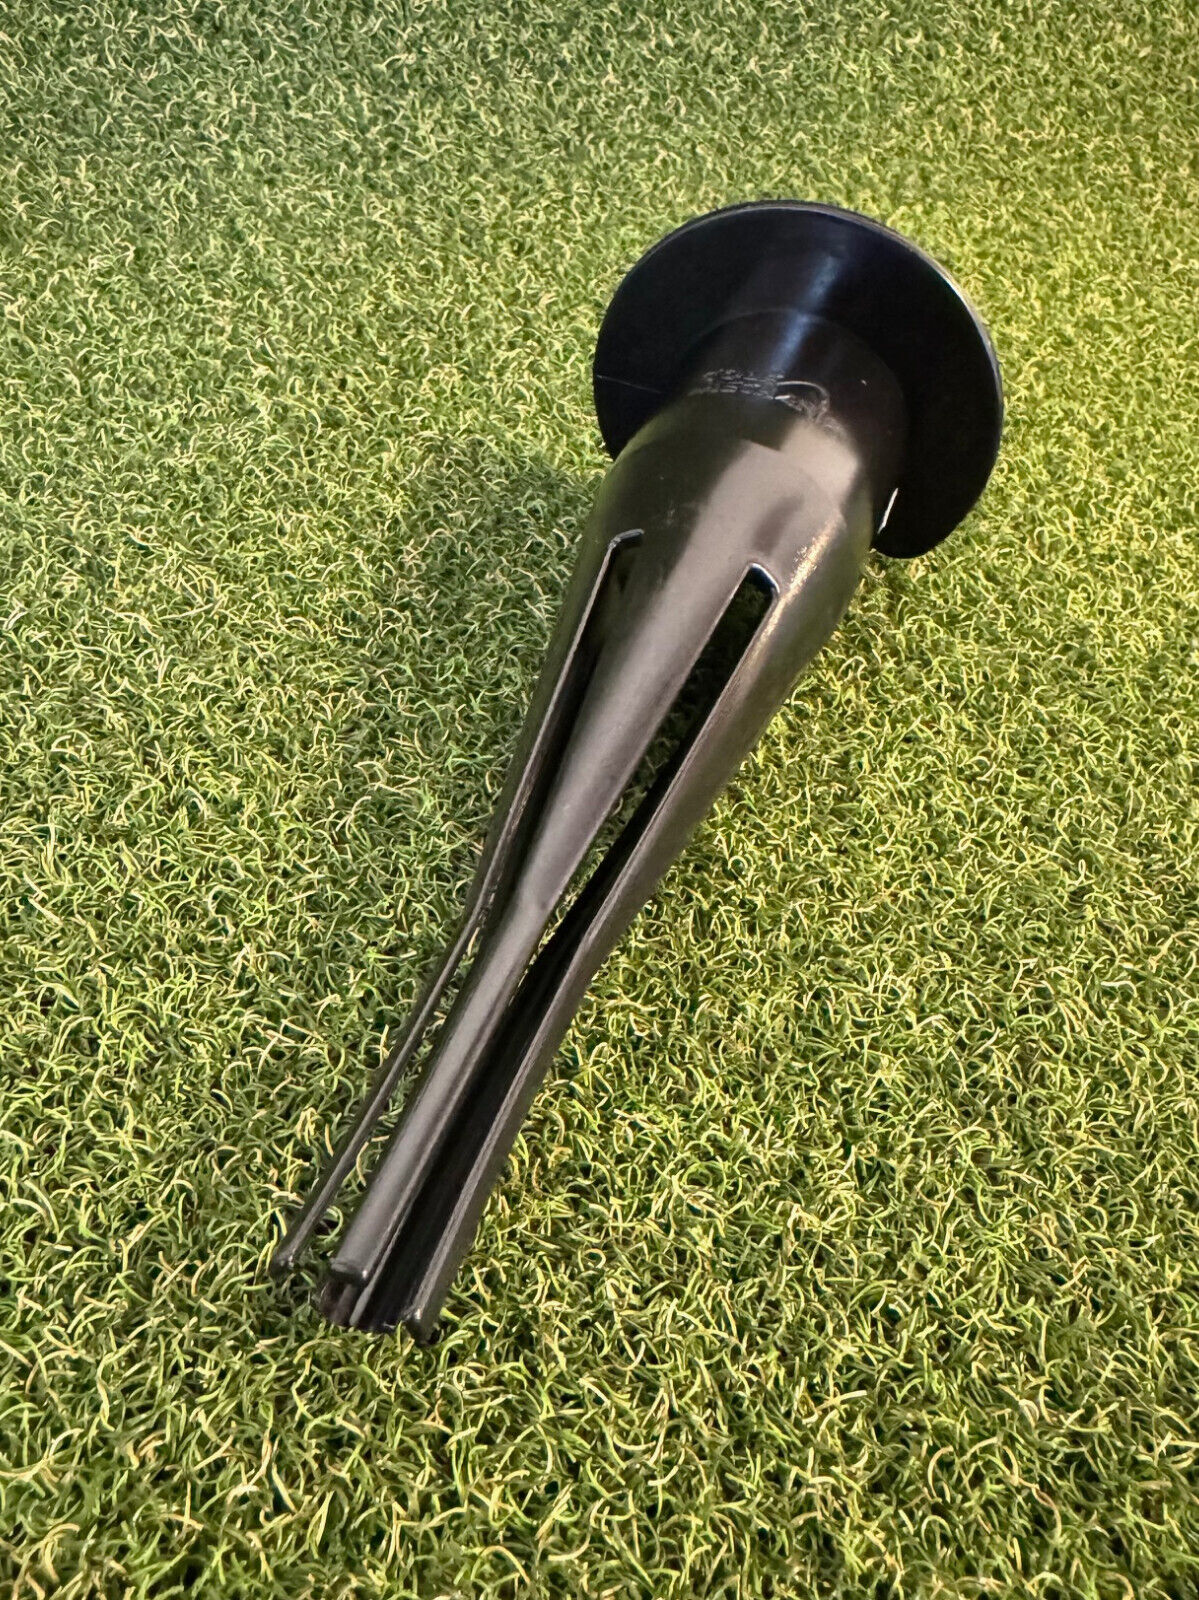 Golf Mechanix Re-Gripping Golf Grip Installer Tool